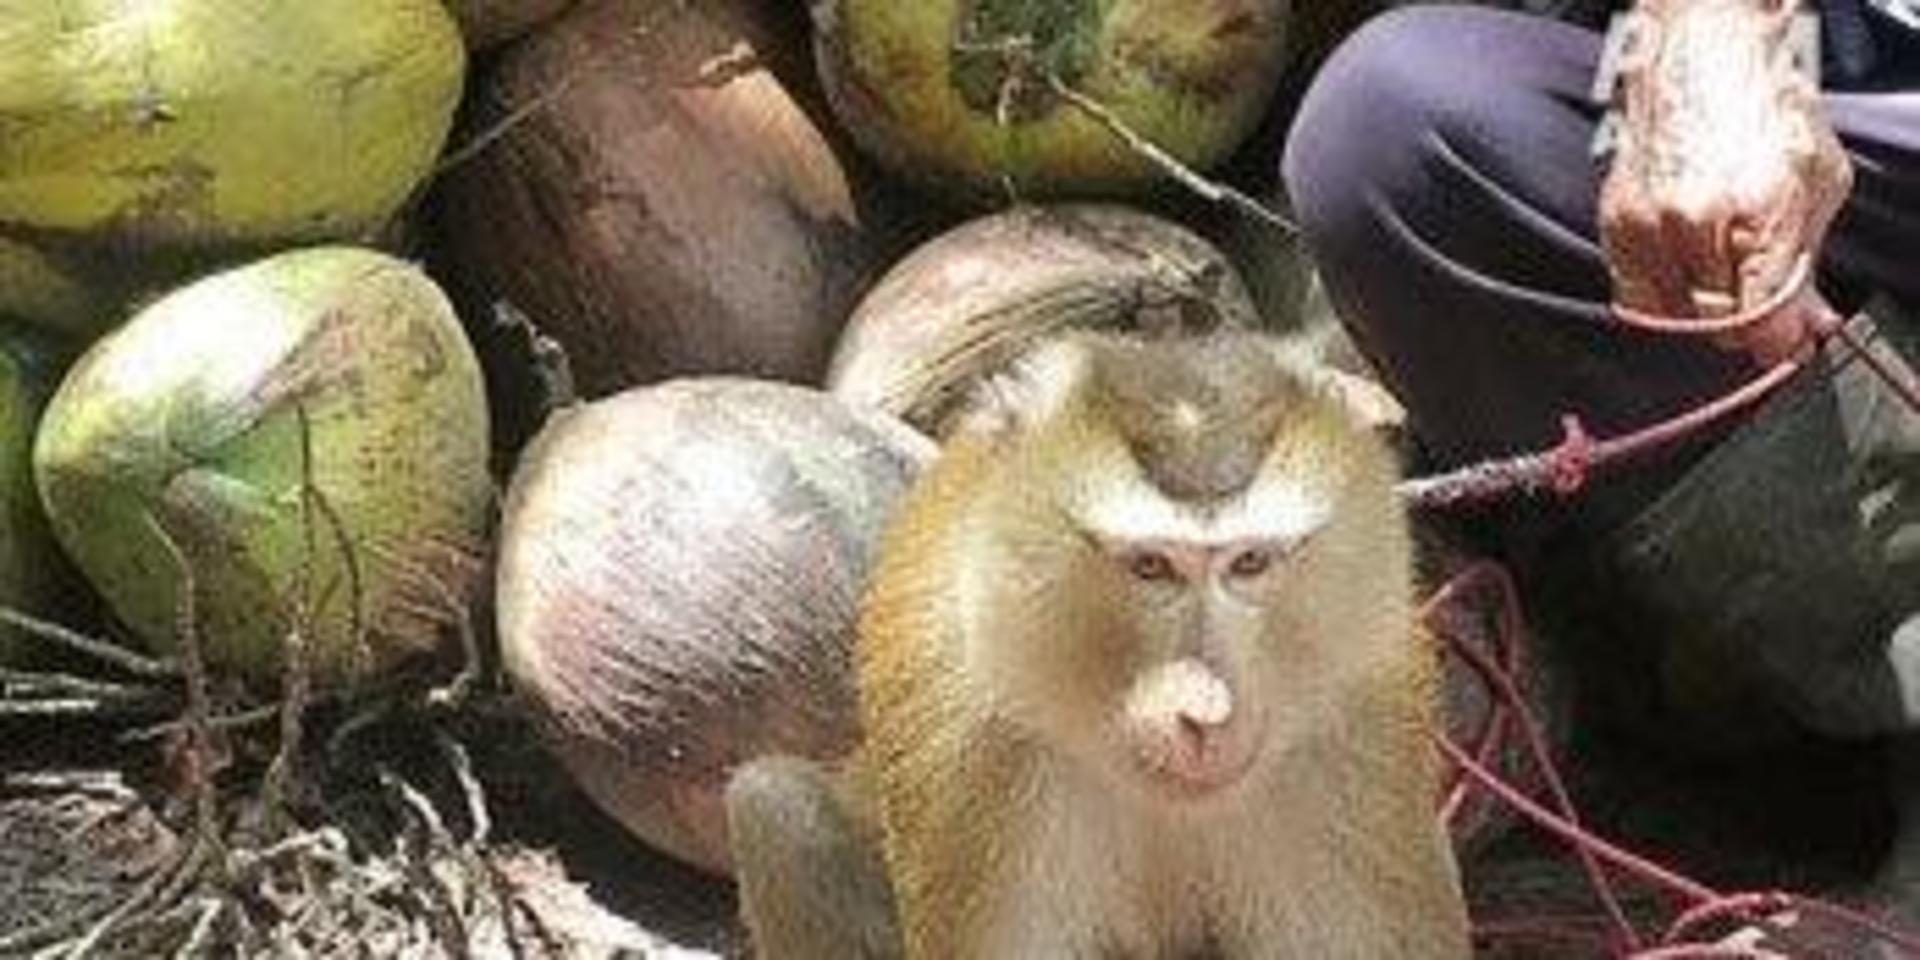 Om aporna gör motstånd när de tvingas plocka kokosnötter har det hänt att tänderna dras ut på dem, enligt Peta.